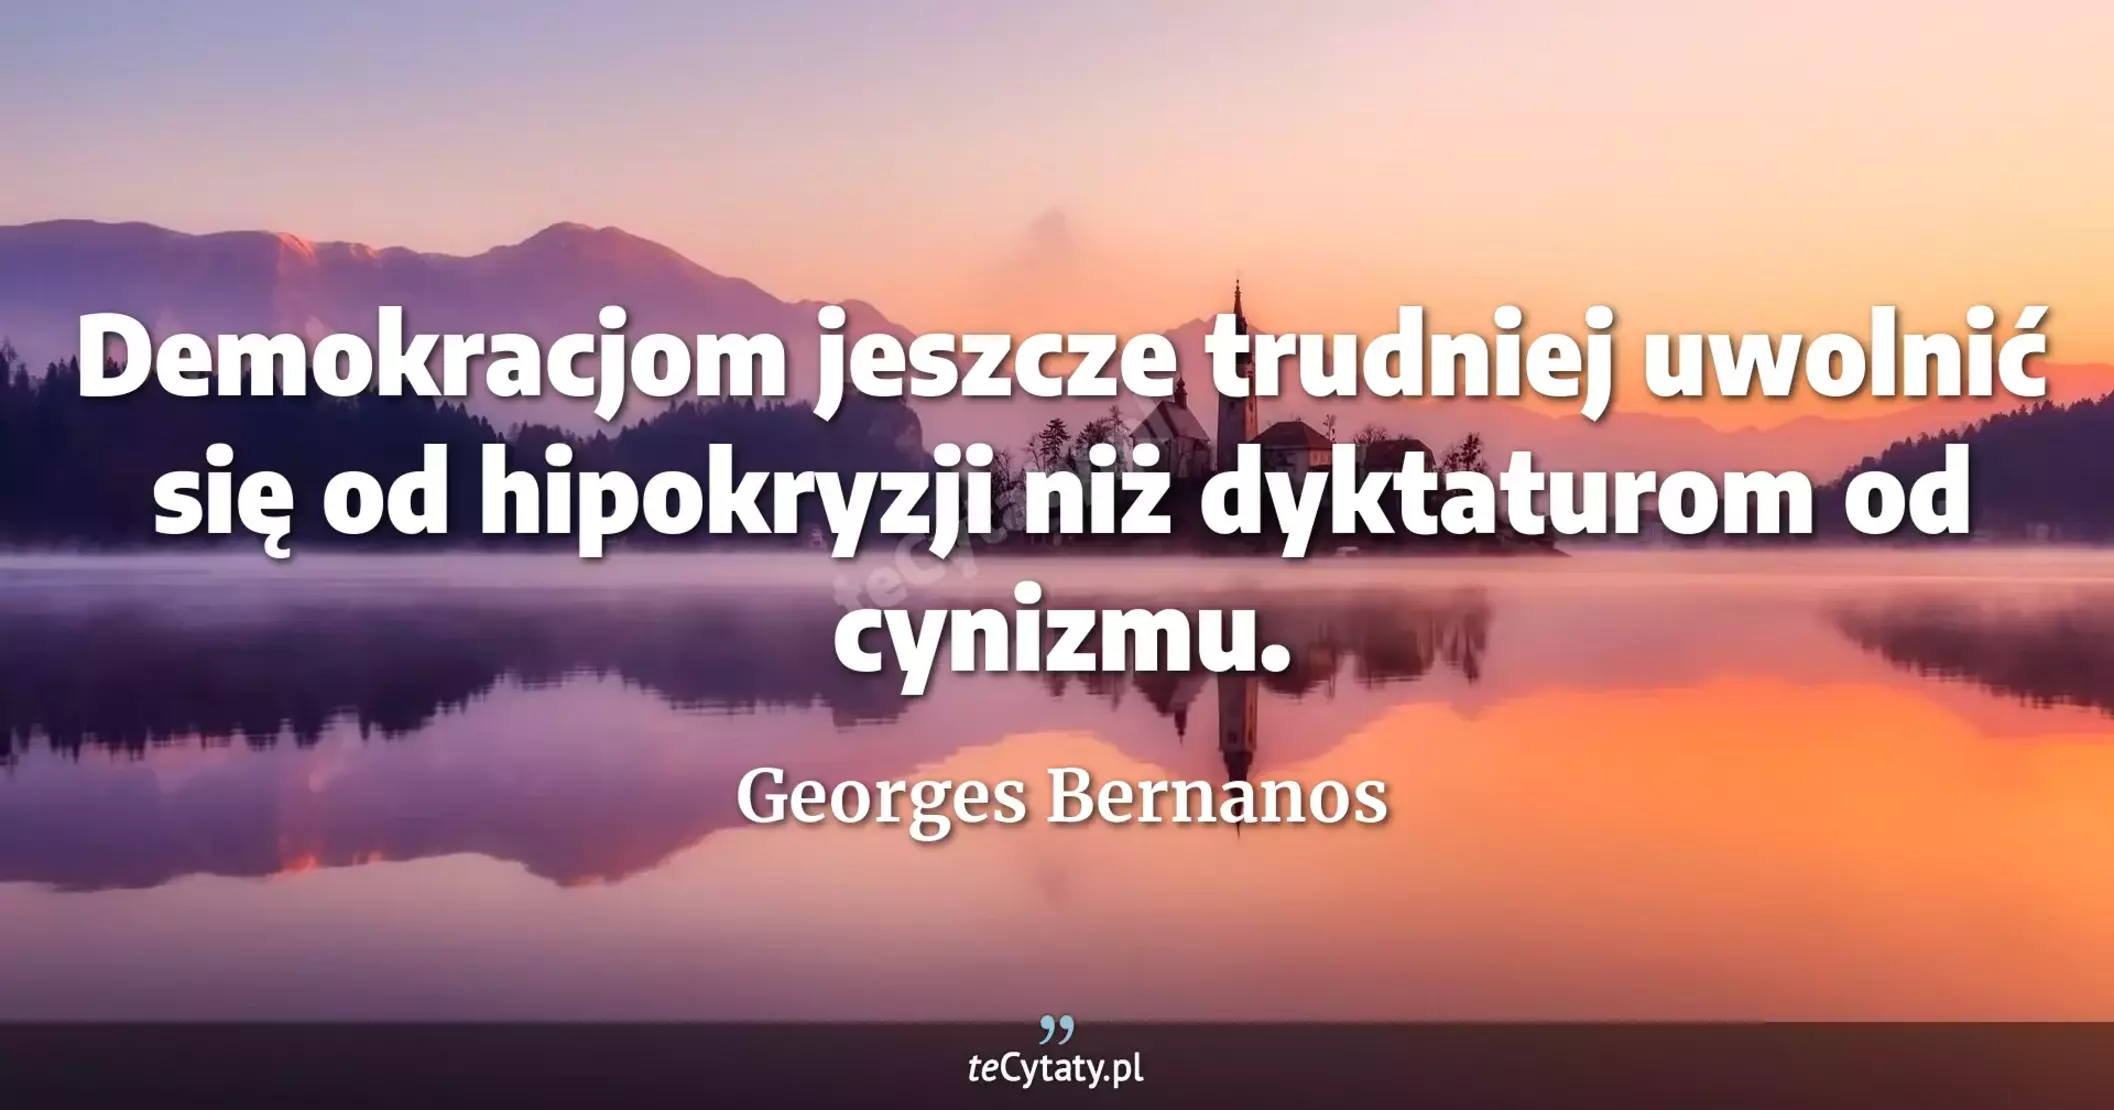 Demokracjom jeszcze trudniej uwolnić się od hipokryzji niż dyktaturom od cynizmu. - Georges Bernanos